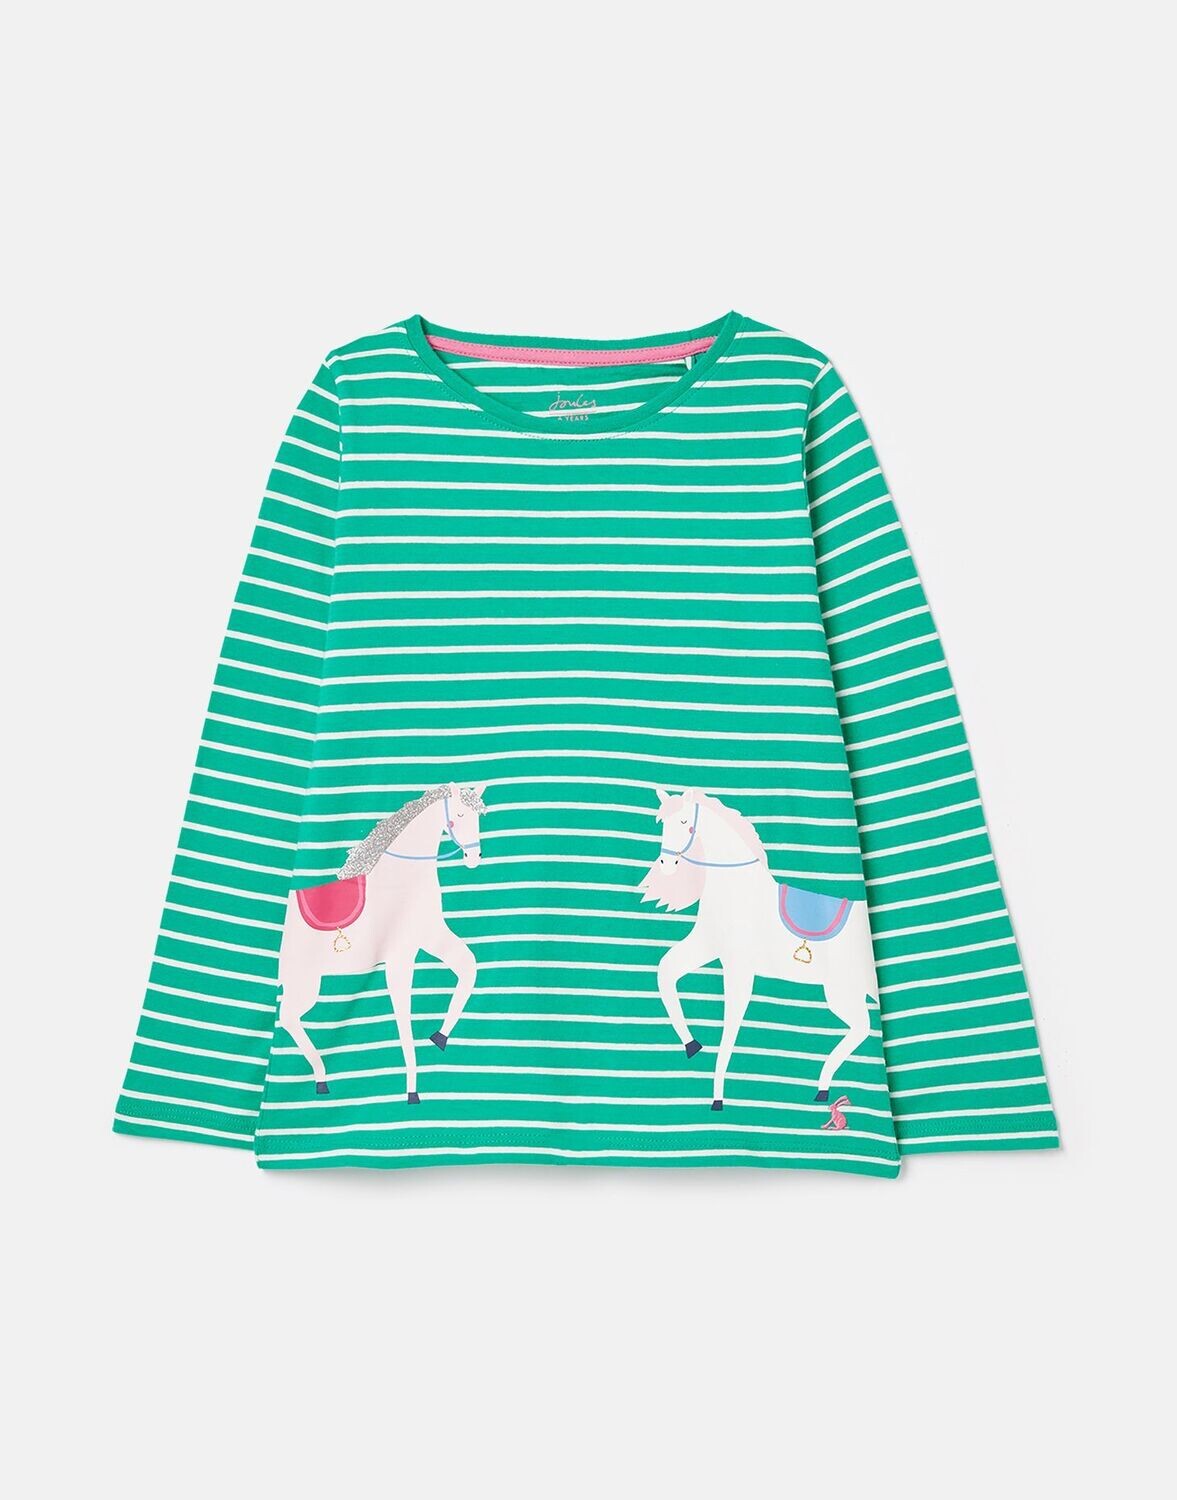 Bessie Green Horses Shirt